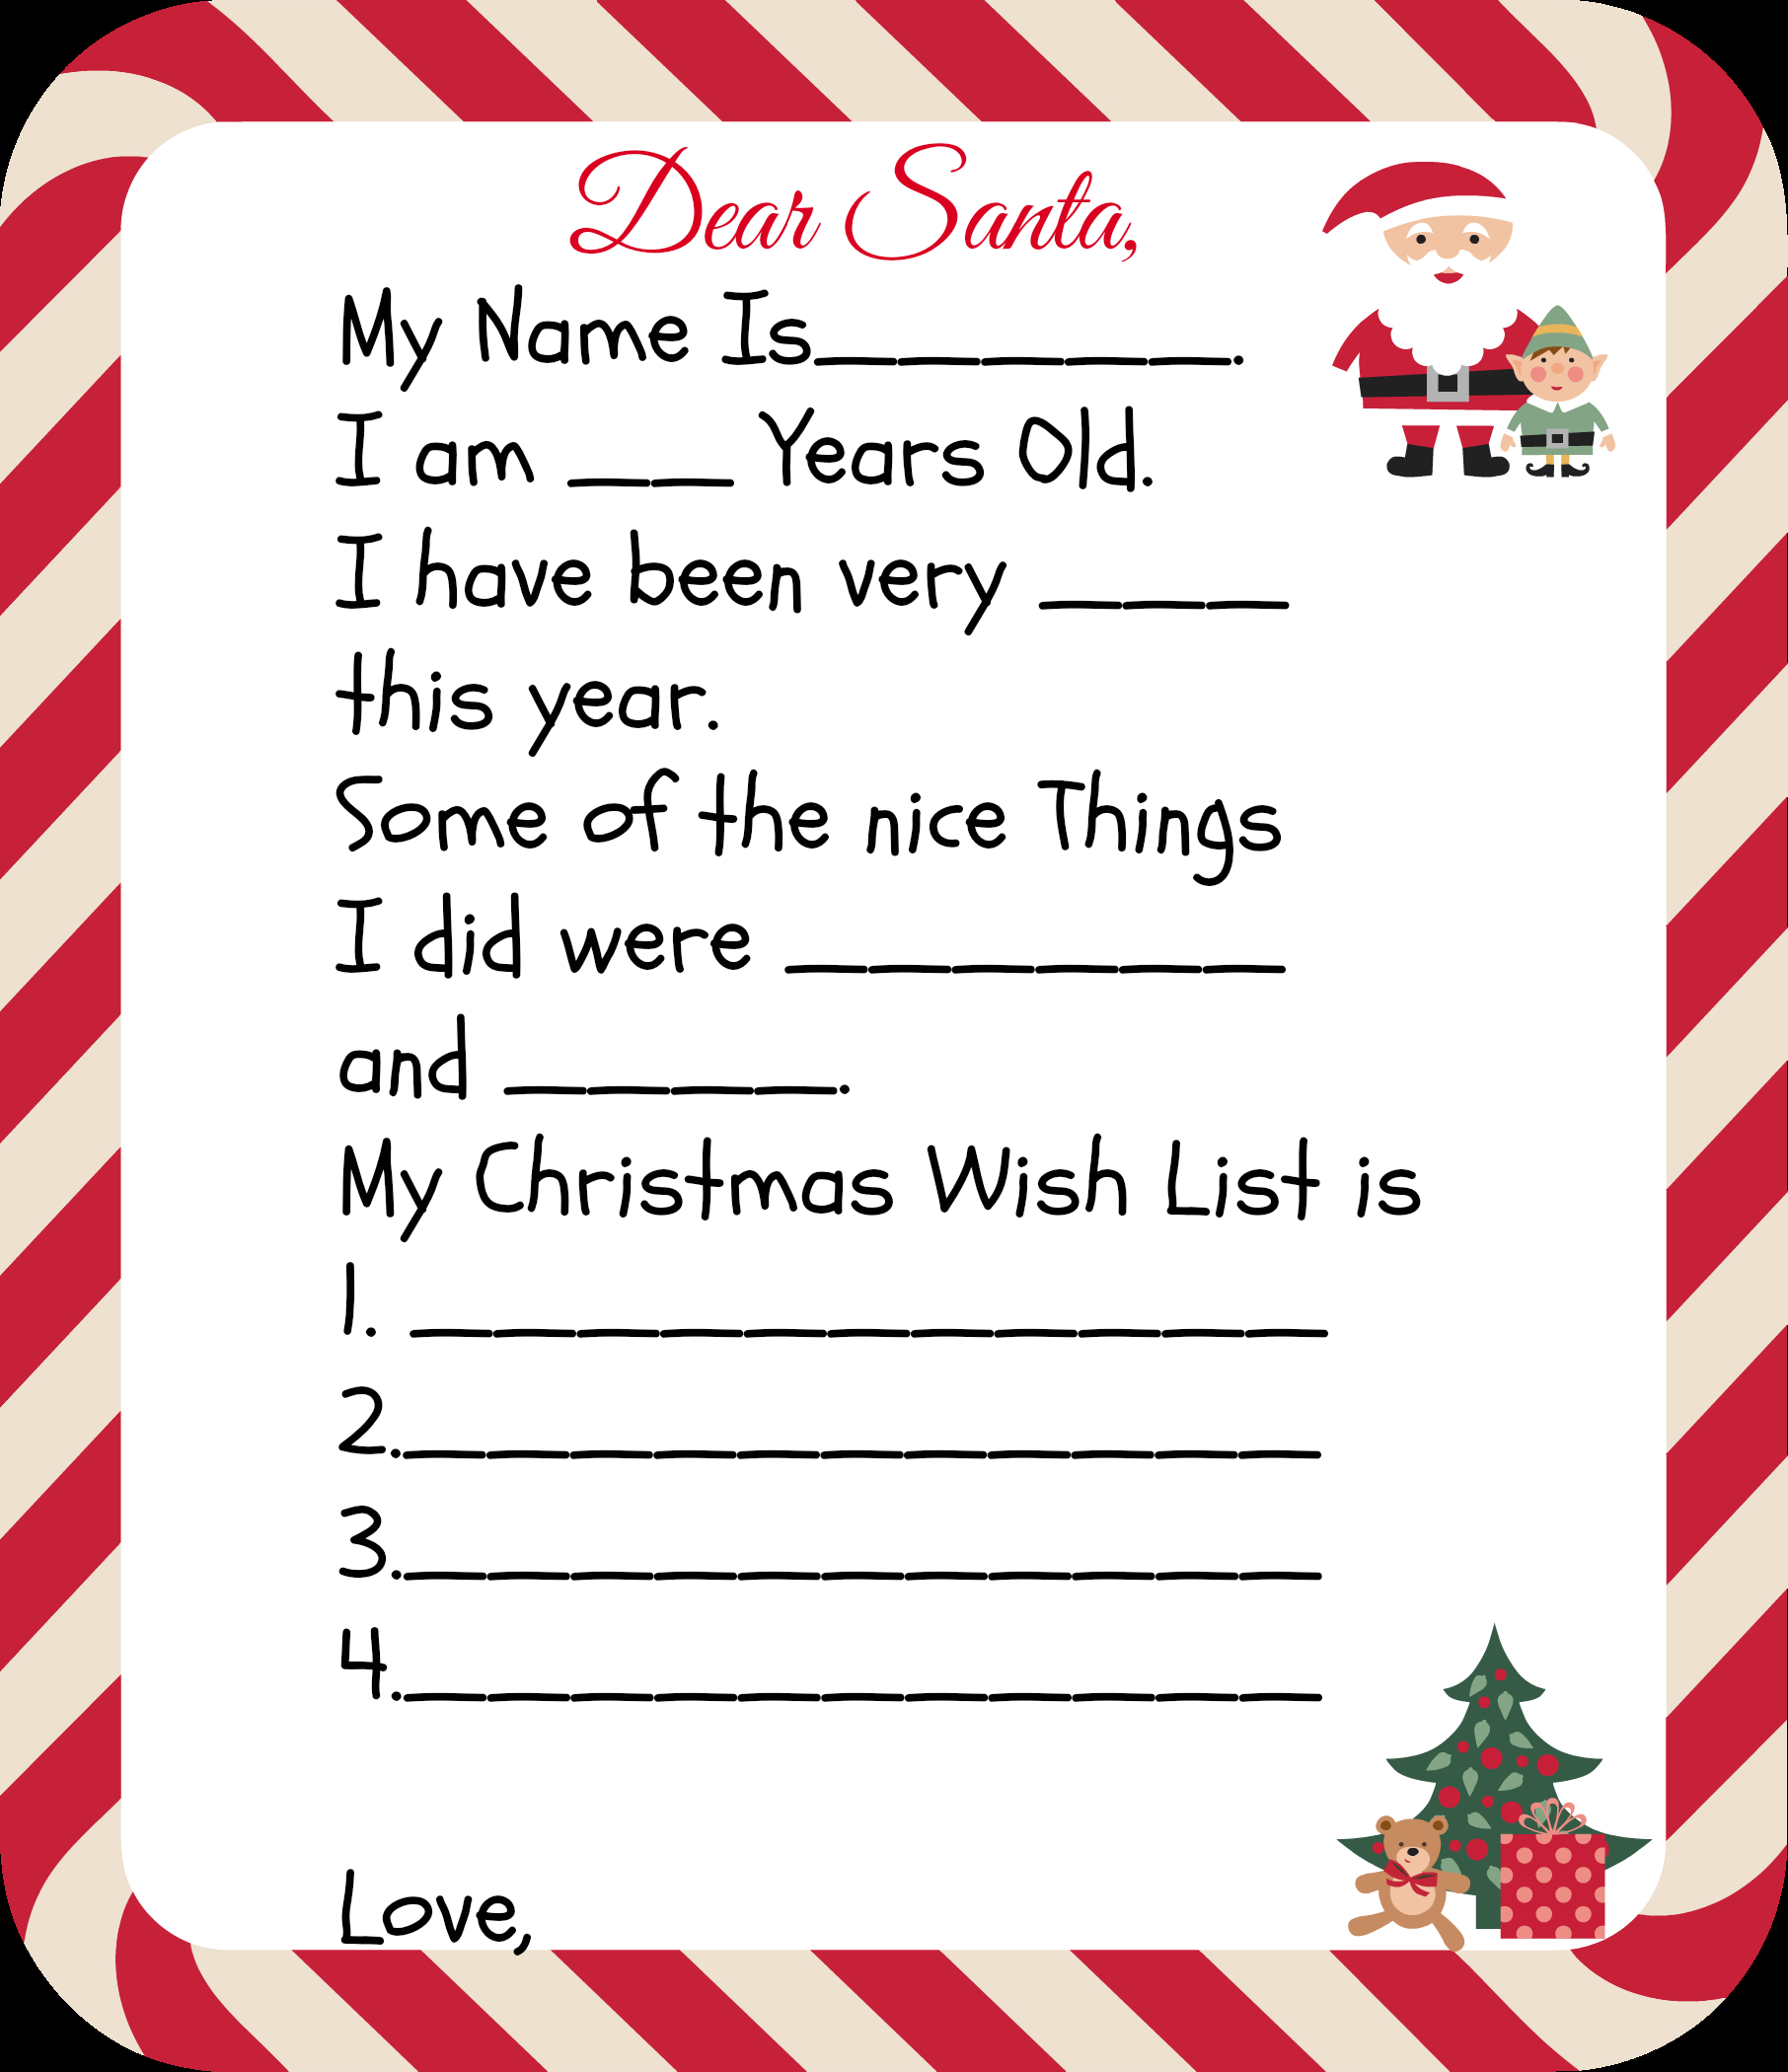 Blank Santa Letter Template - Free Printable Santa Letters for Kids Pinterest